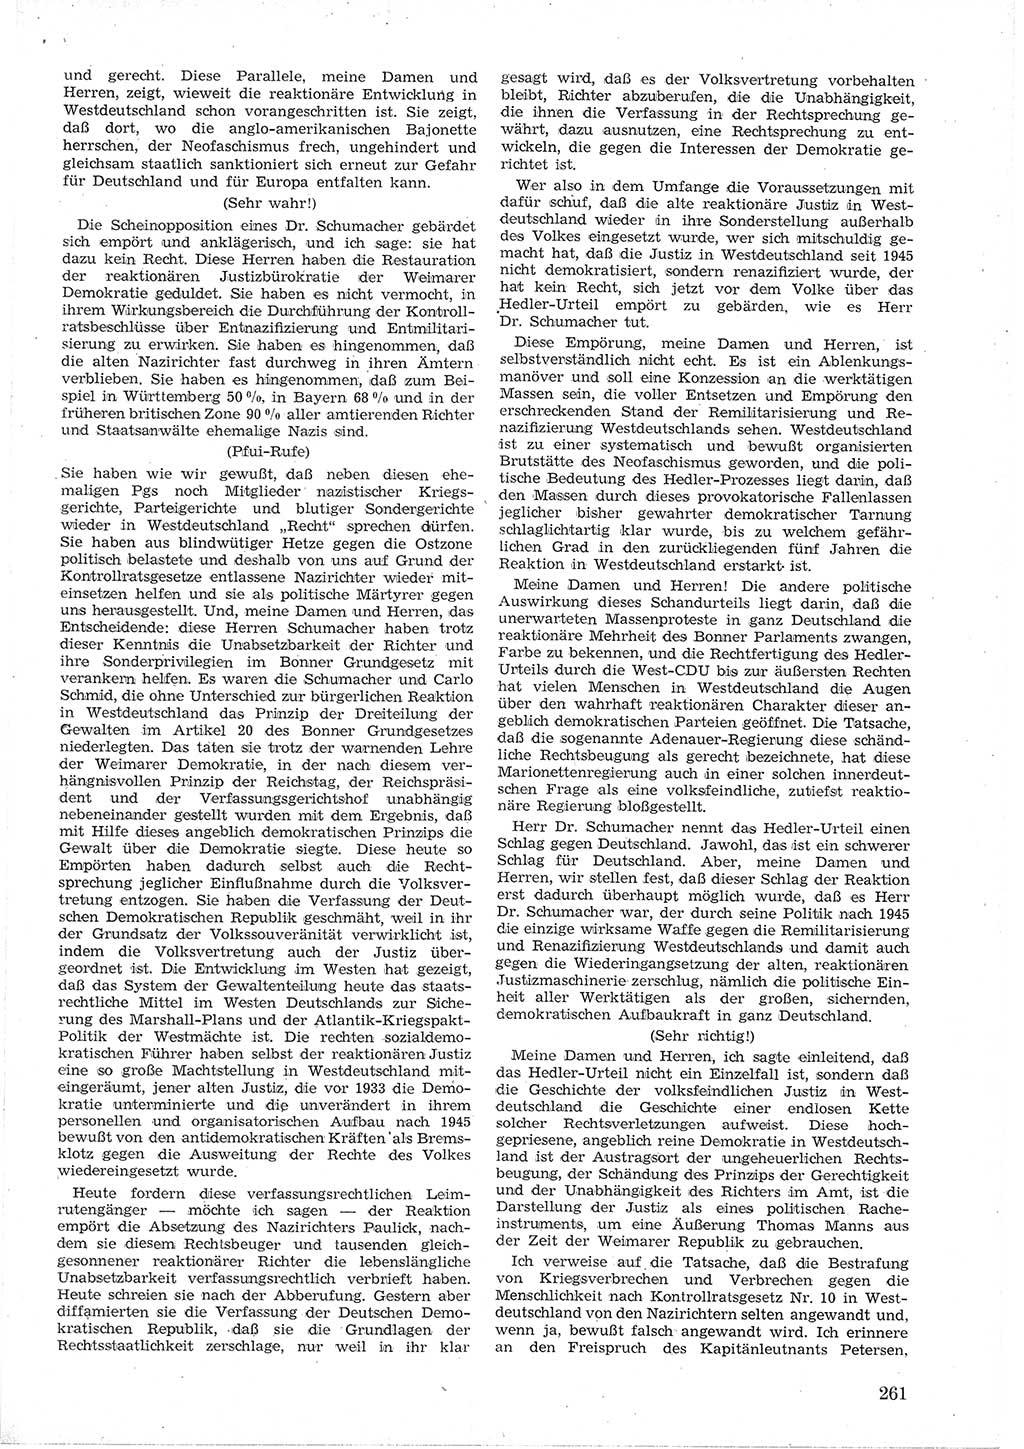 Provisorische Volkskammer (VK) der Deutschen Demokratischen Republik (DDR) 1949-1950, Dokument 275 (Prov. VK DDR 1949-1950, Dok. 275)